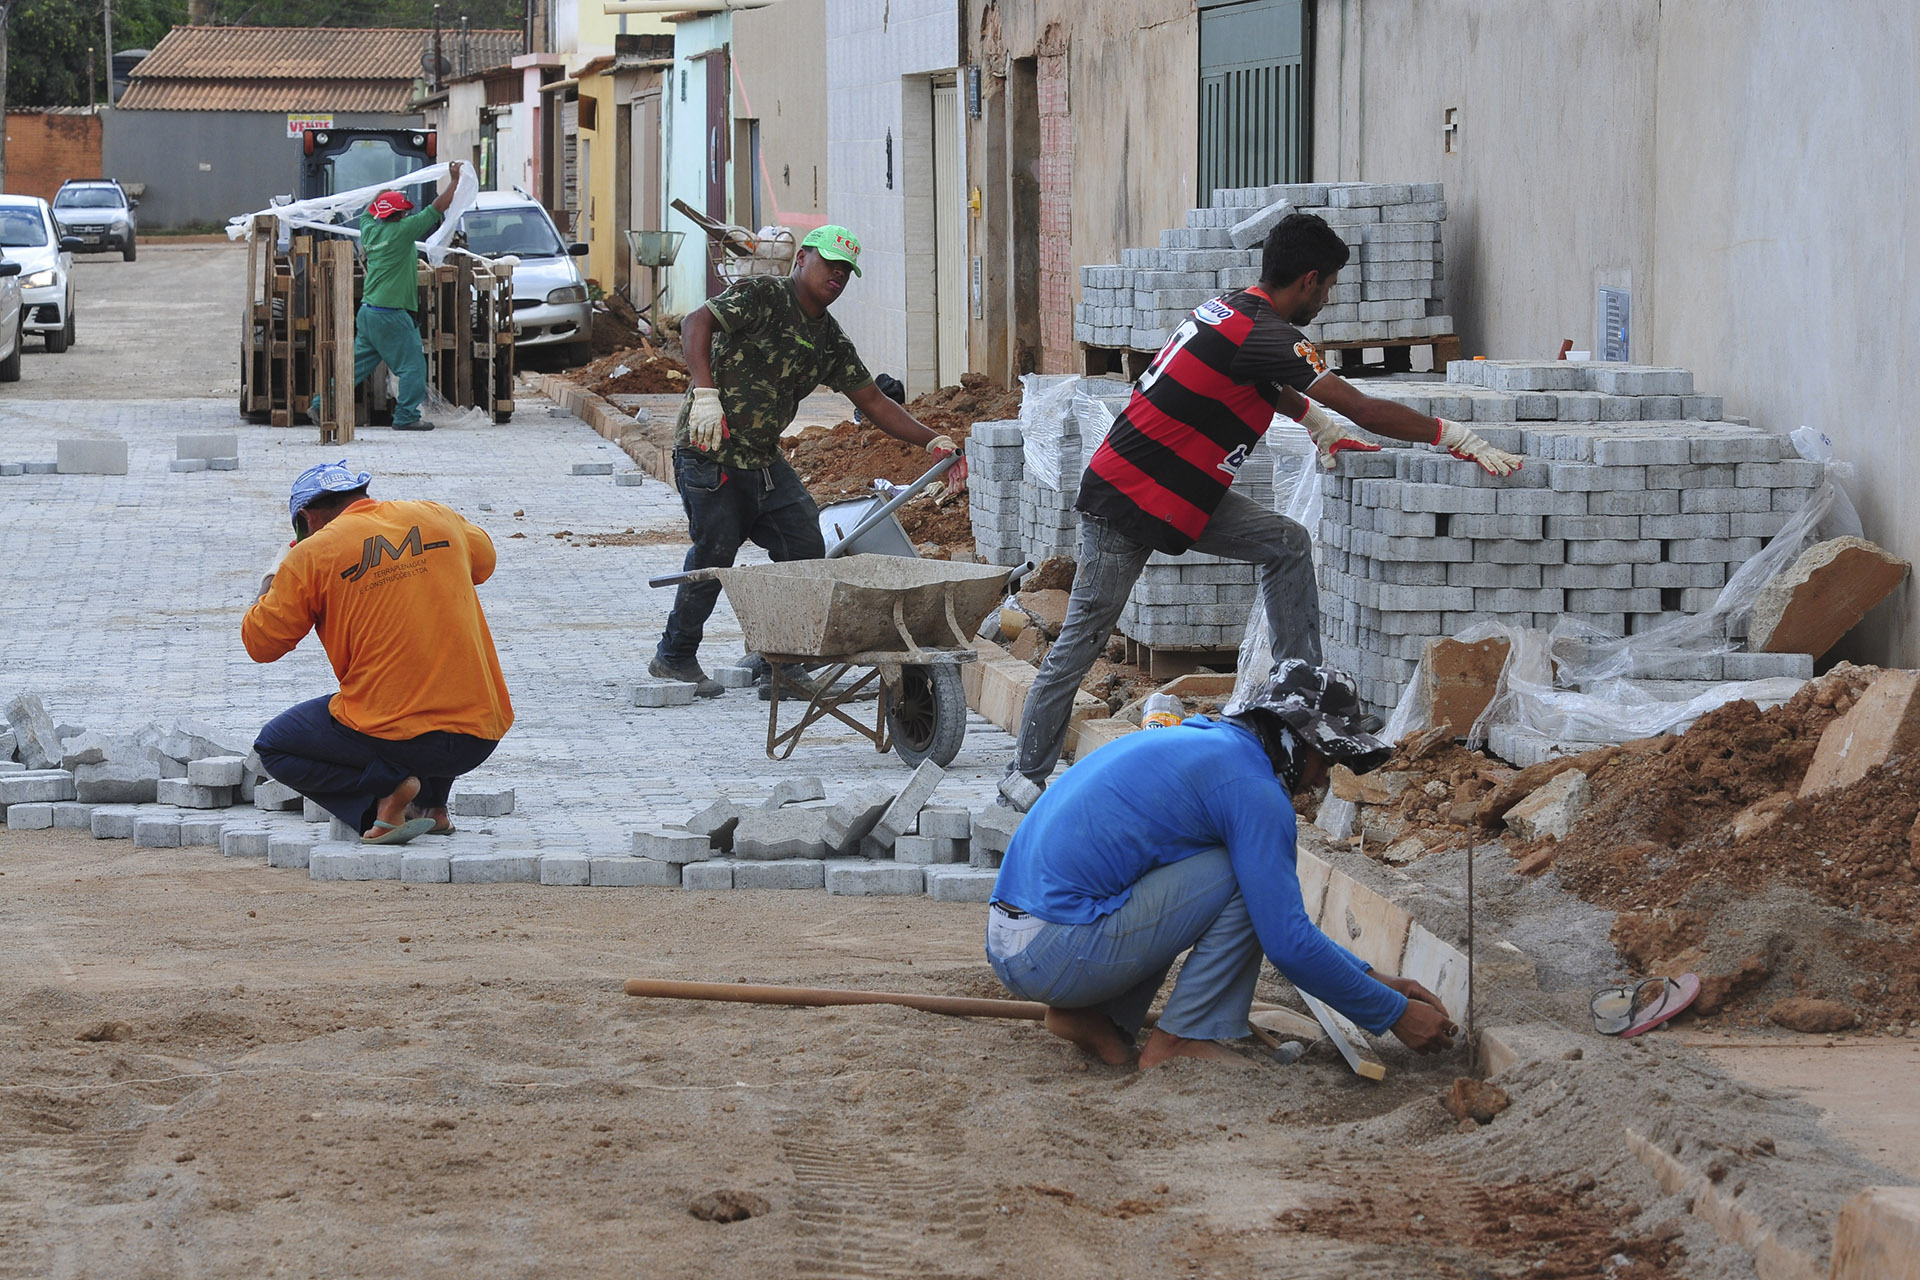 Obras no setor habitacional Buritizinho, em Sobradinho II, estão com 89% da drenagem e 85% da pavimentação executadas. Intervenções custaram quase R$ 7 milhões a menos do que o orçado inicialmente e vão beneficiar cerca de 8 mil pessoas.